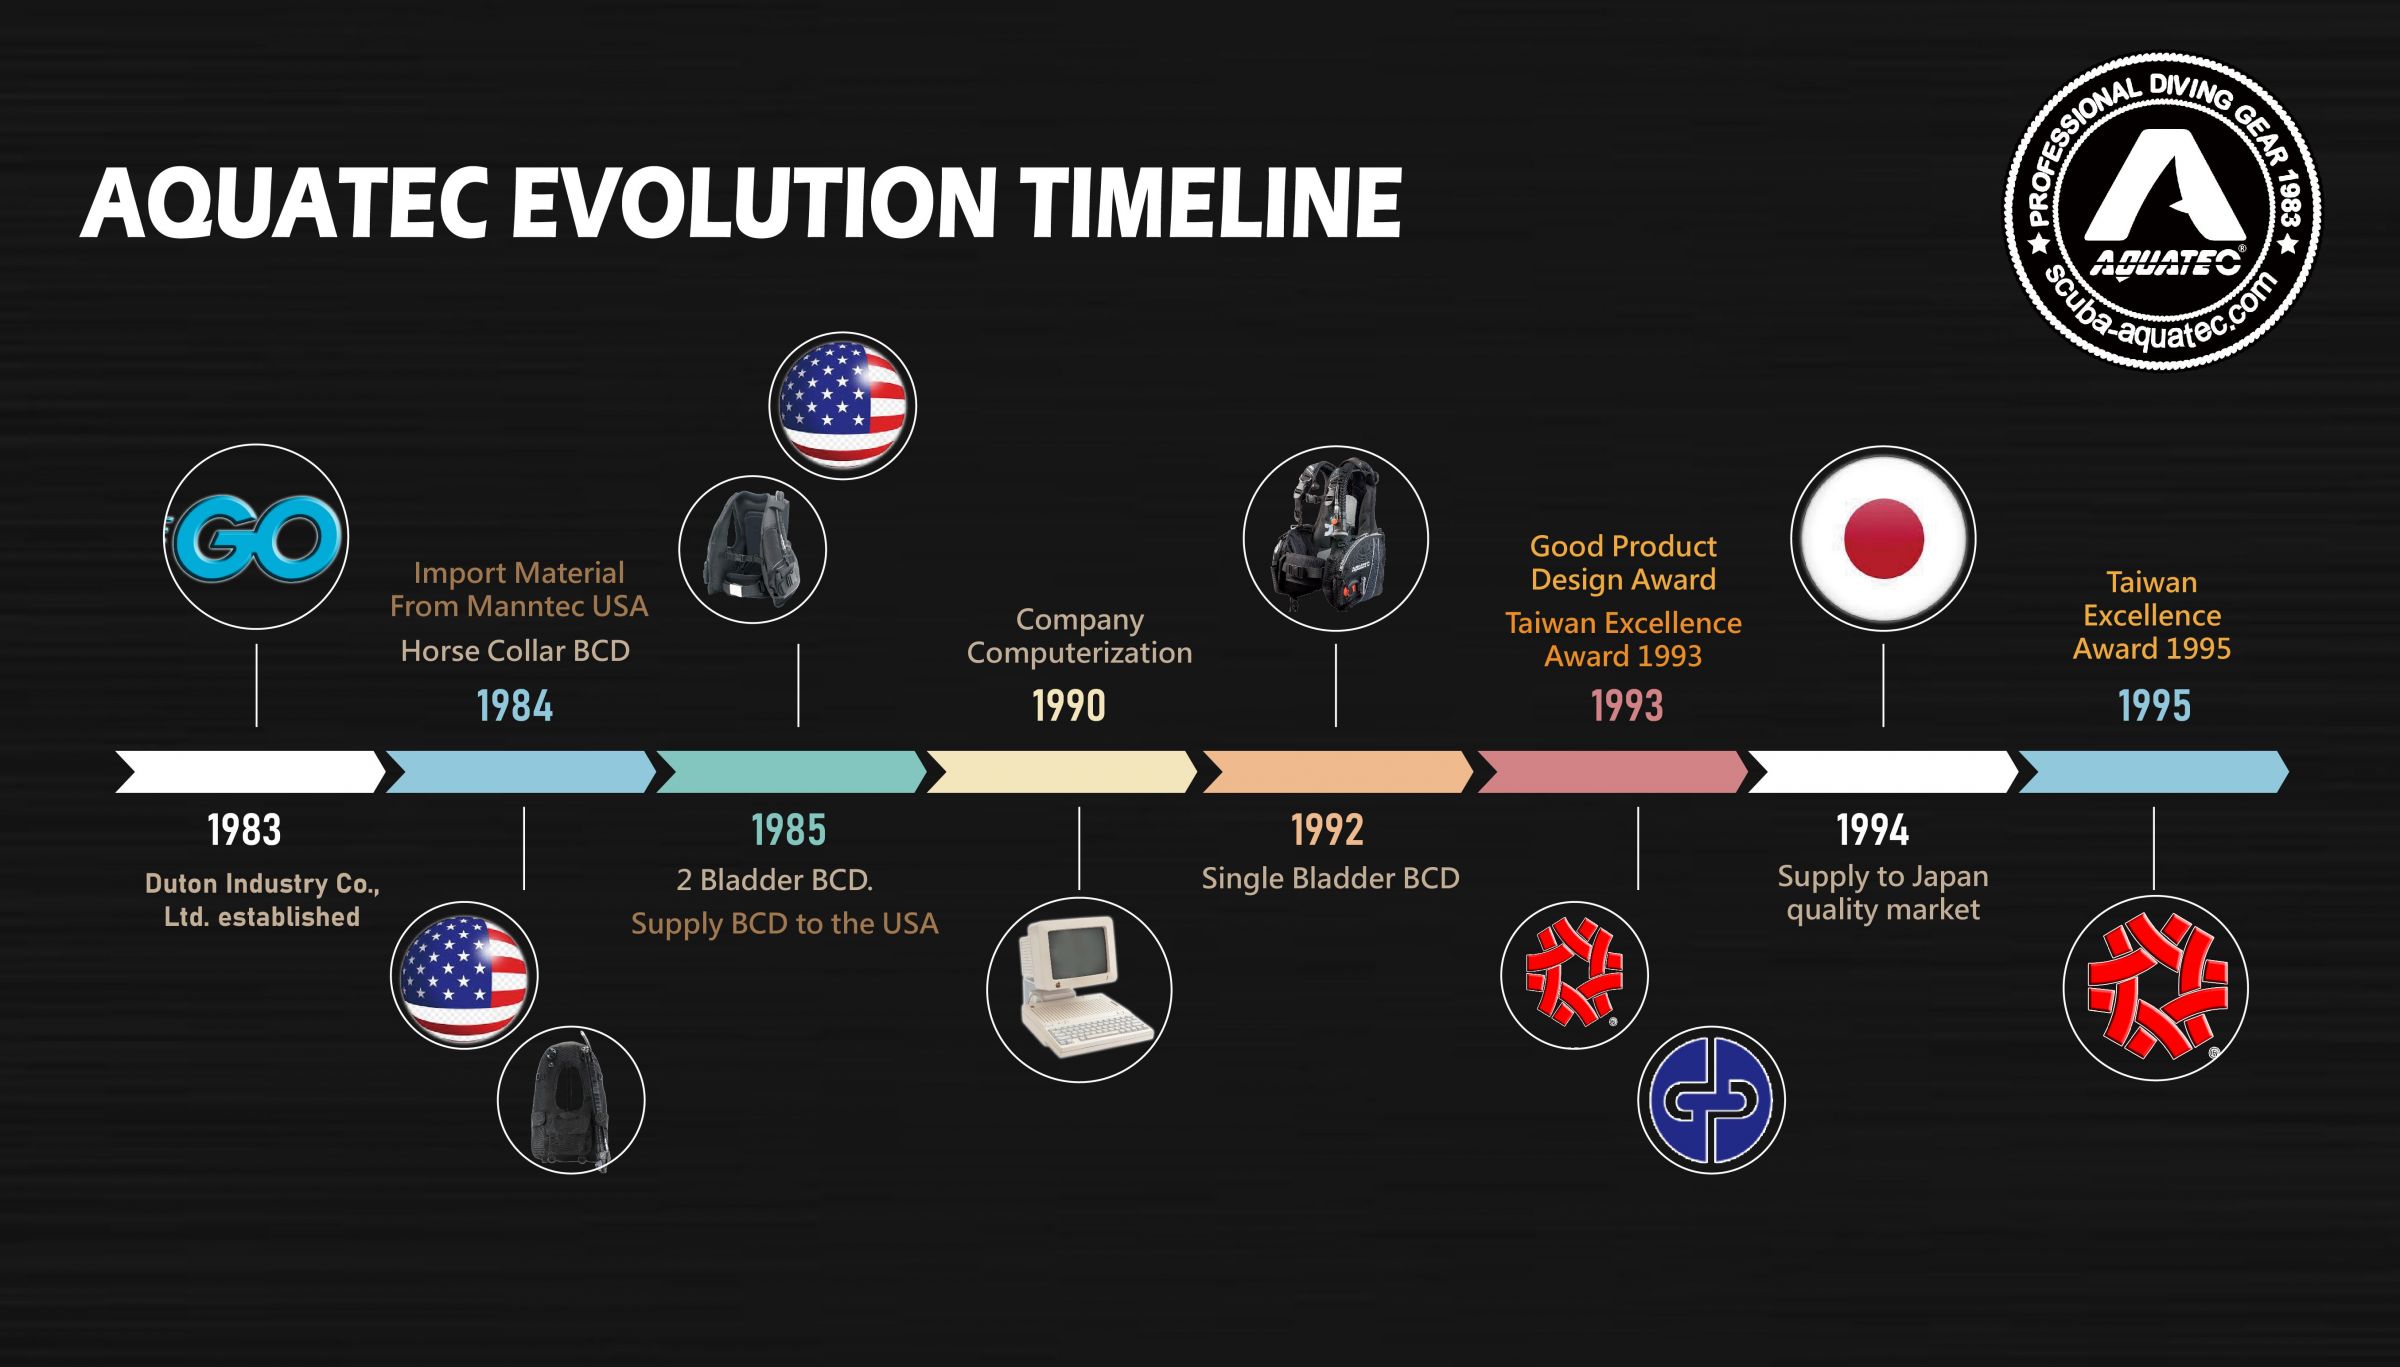 Scuba Aquatec History Timeline